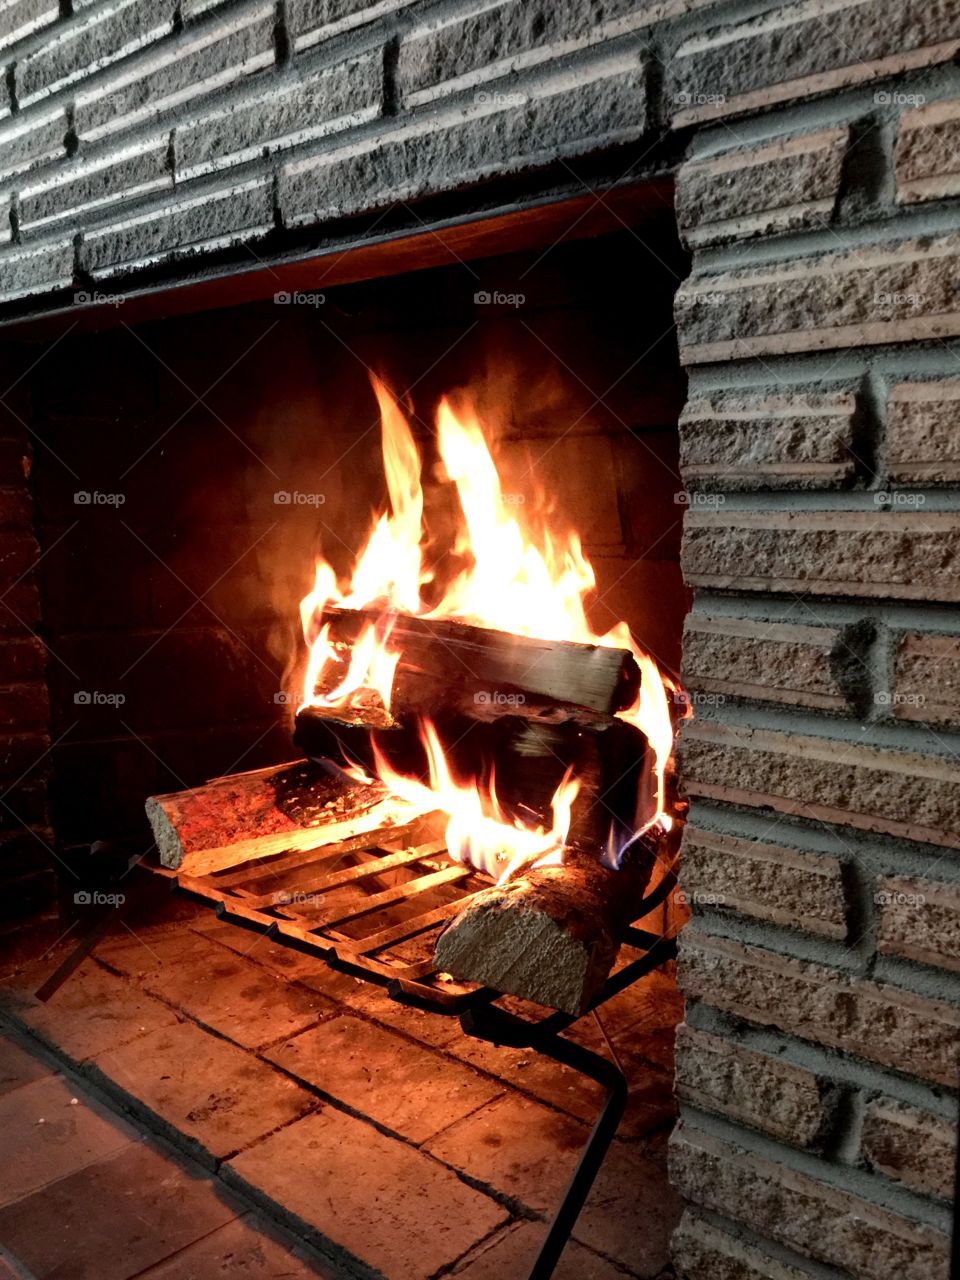 Firebox . Fireplace wood burning 